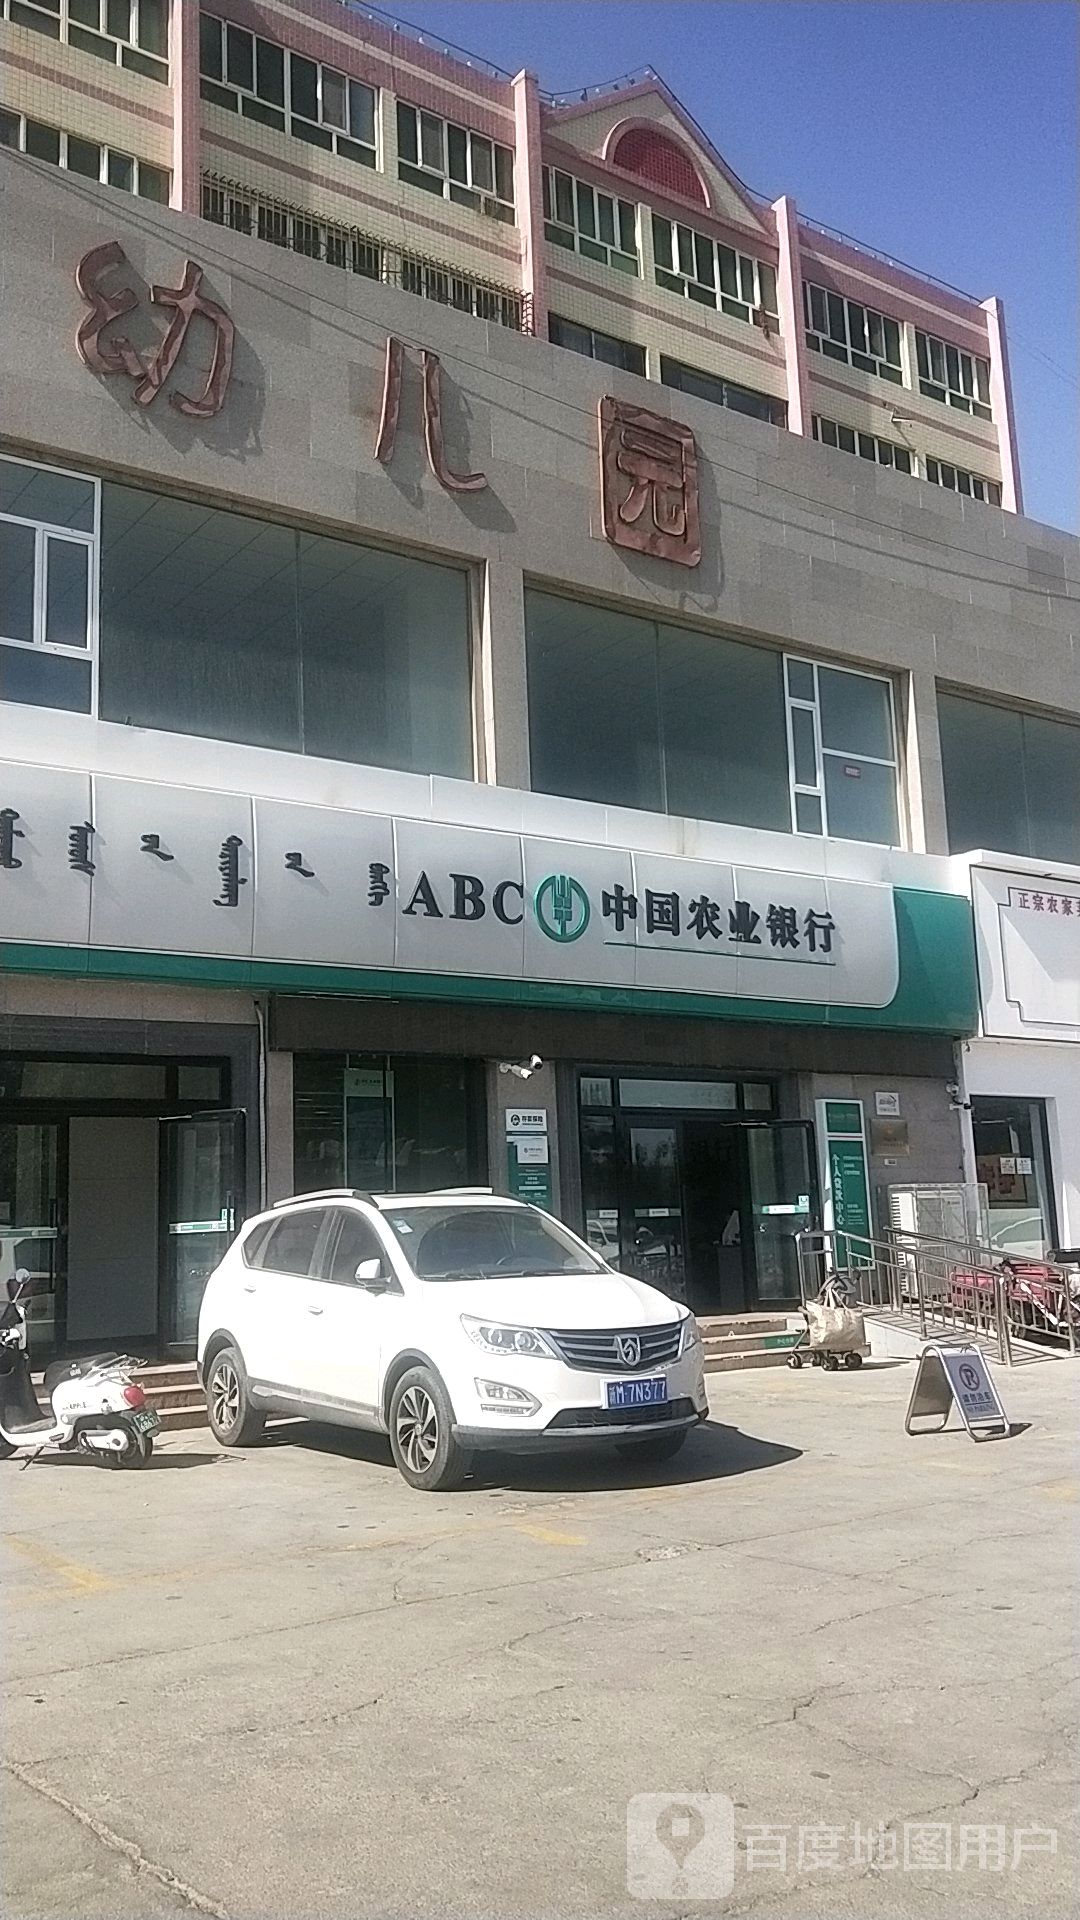 中国农商银行(库尔勒石化路支行)